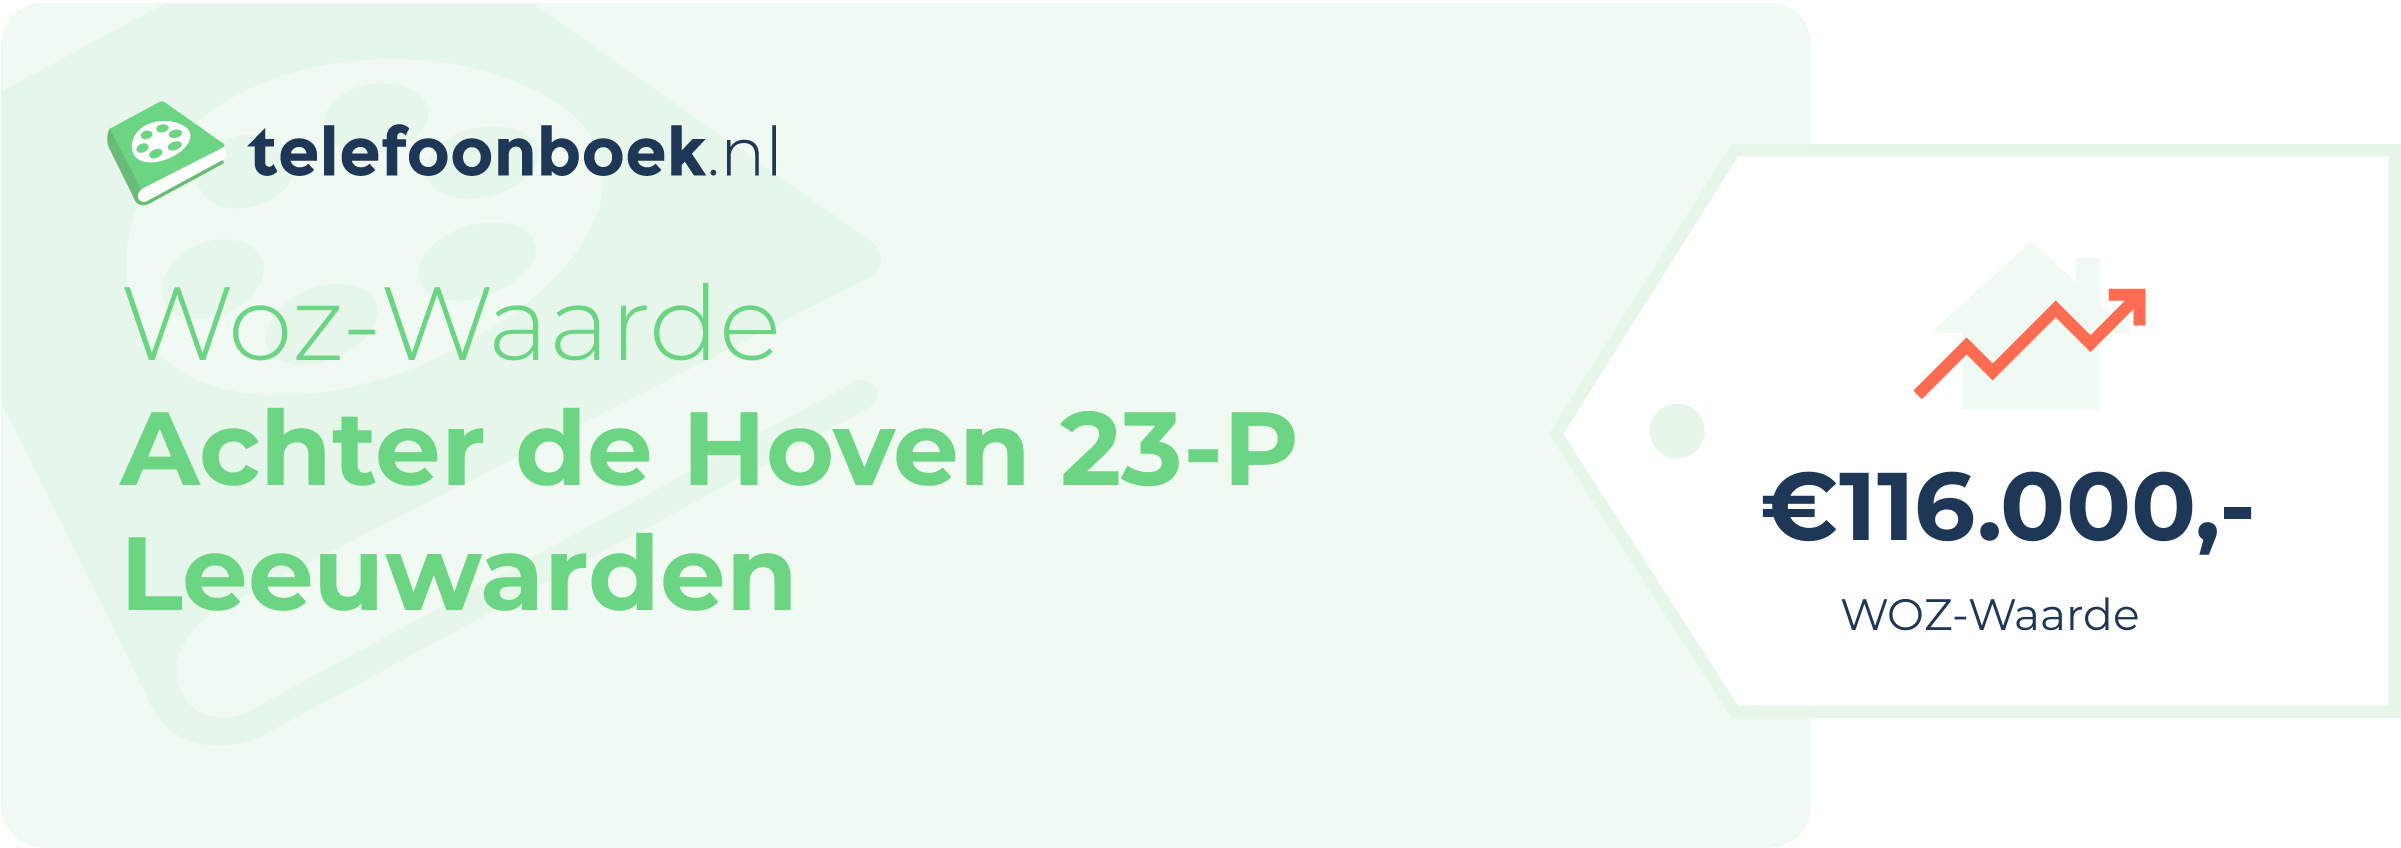 WOZ-waarde Achter De Hoven 23-P Leeuwarden